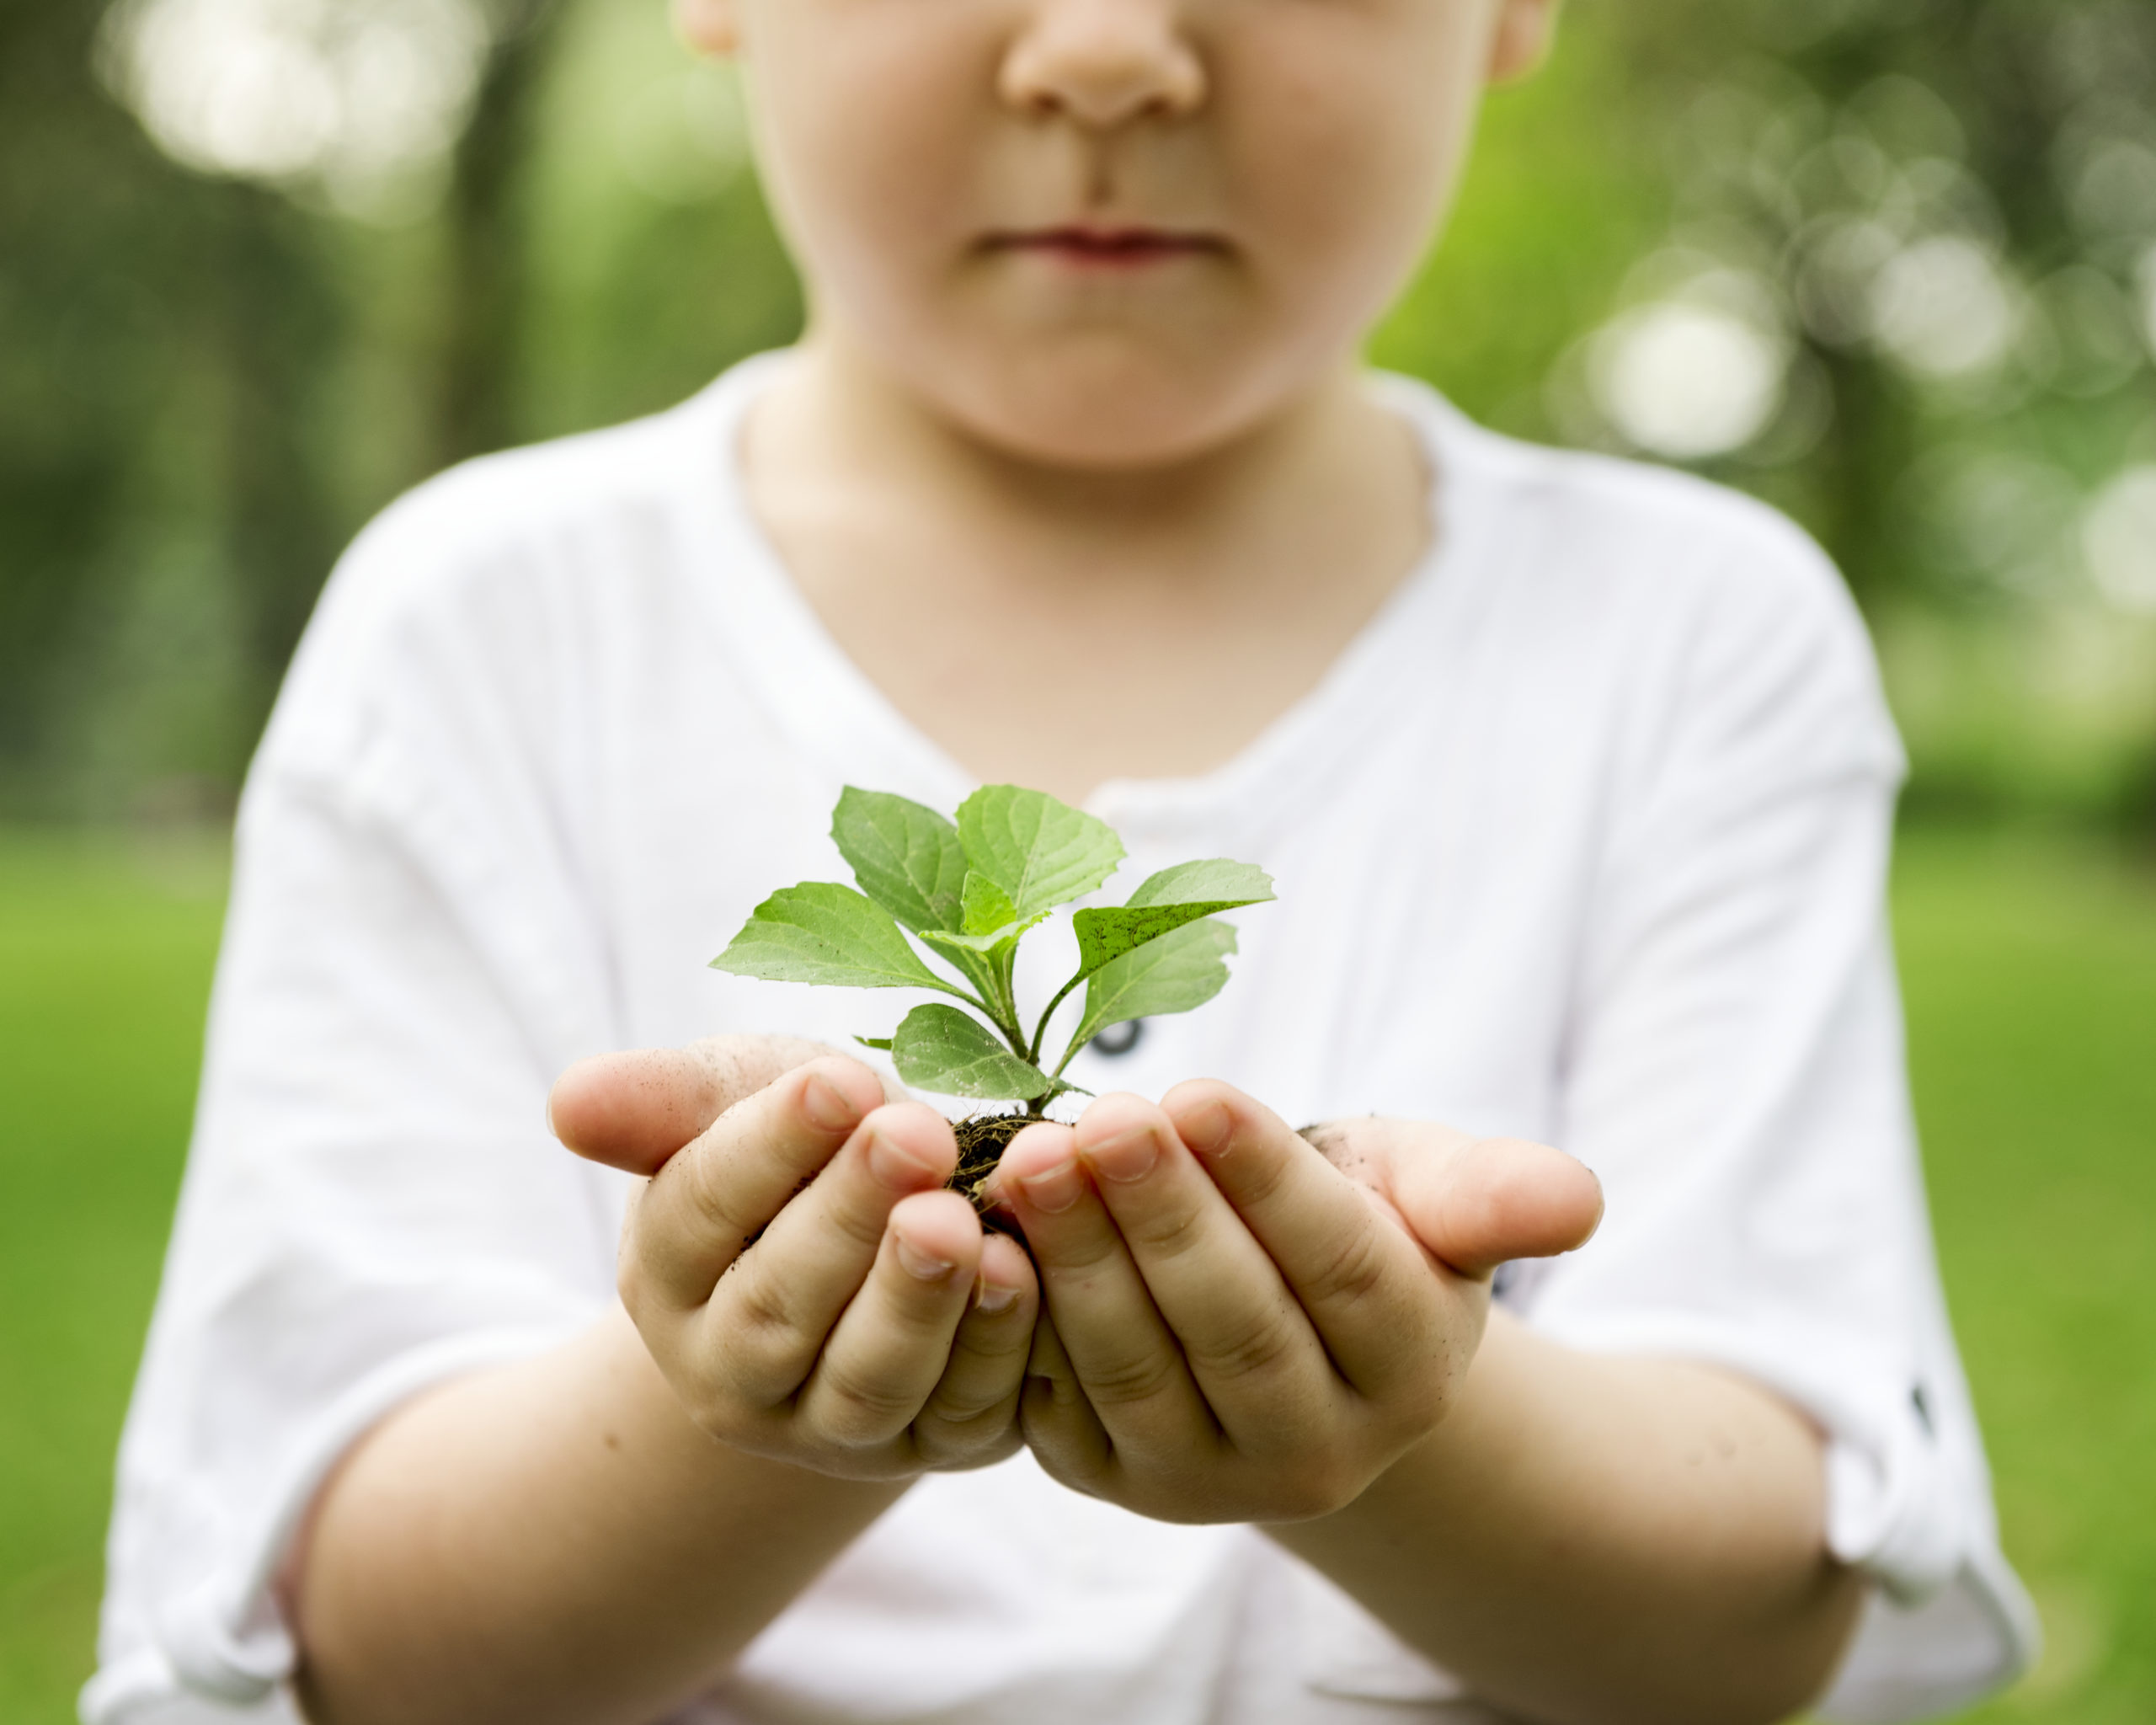 Защитить проявлять. Экологическое воспитание. Дети и природа. Детям об экологии. Забота о природе.